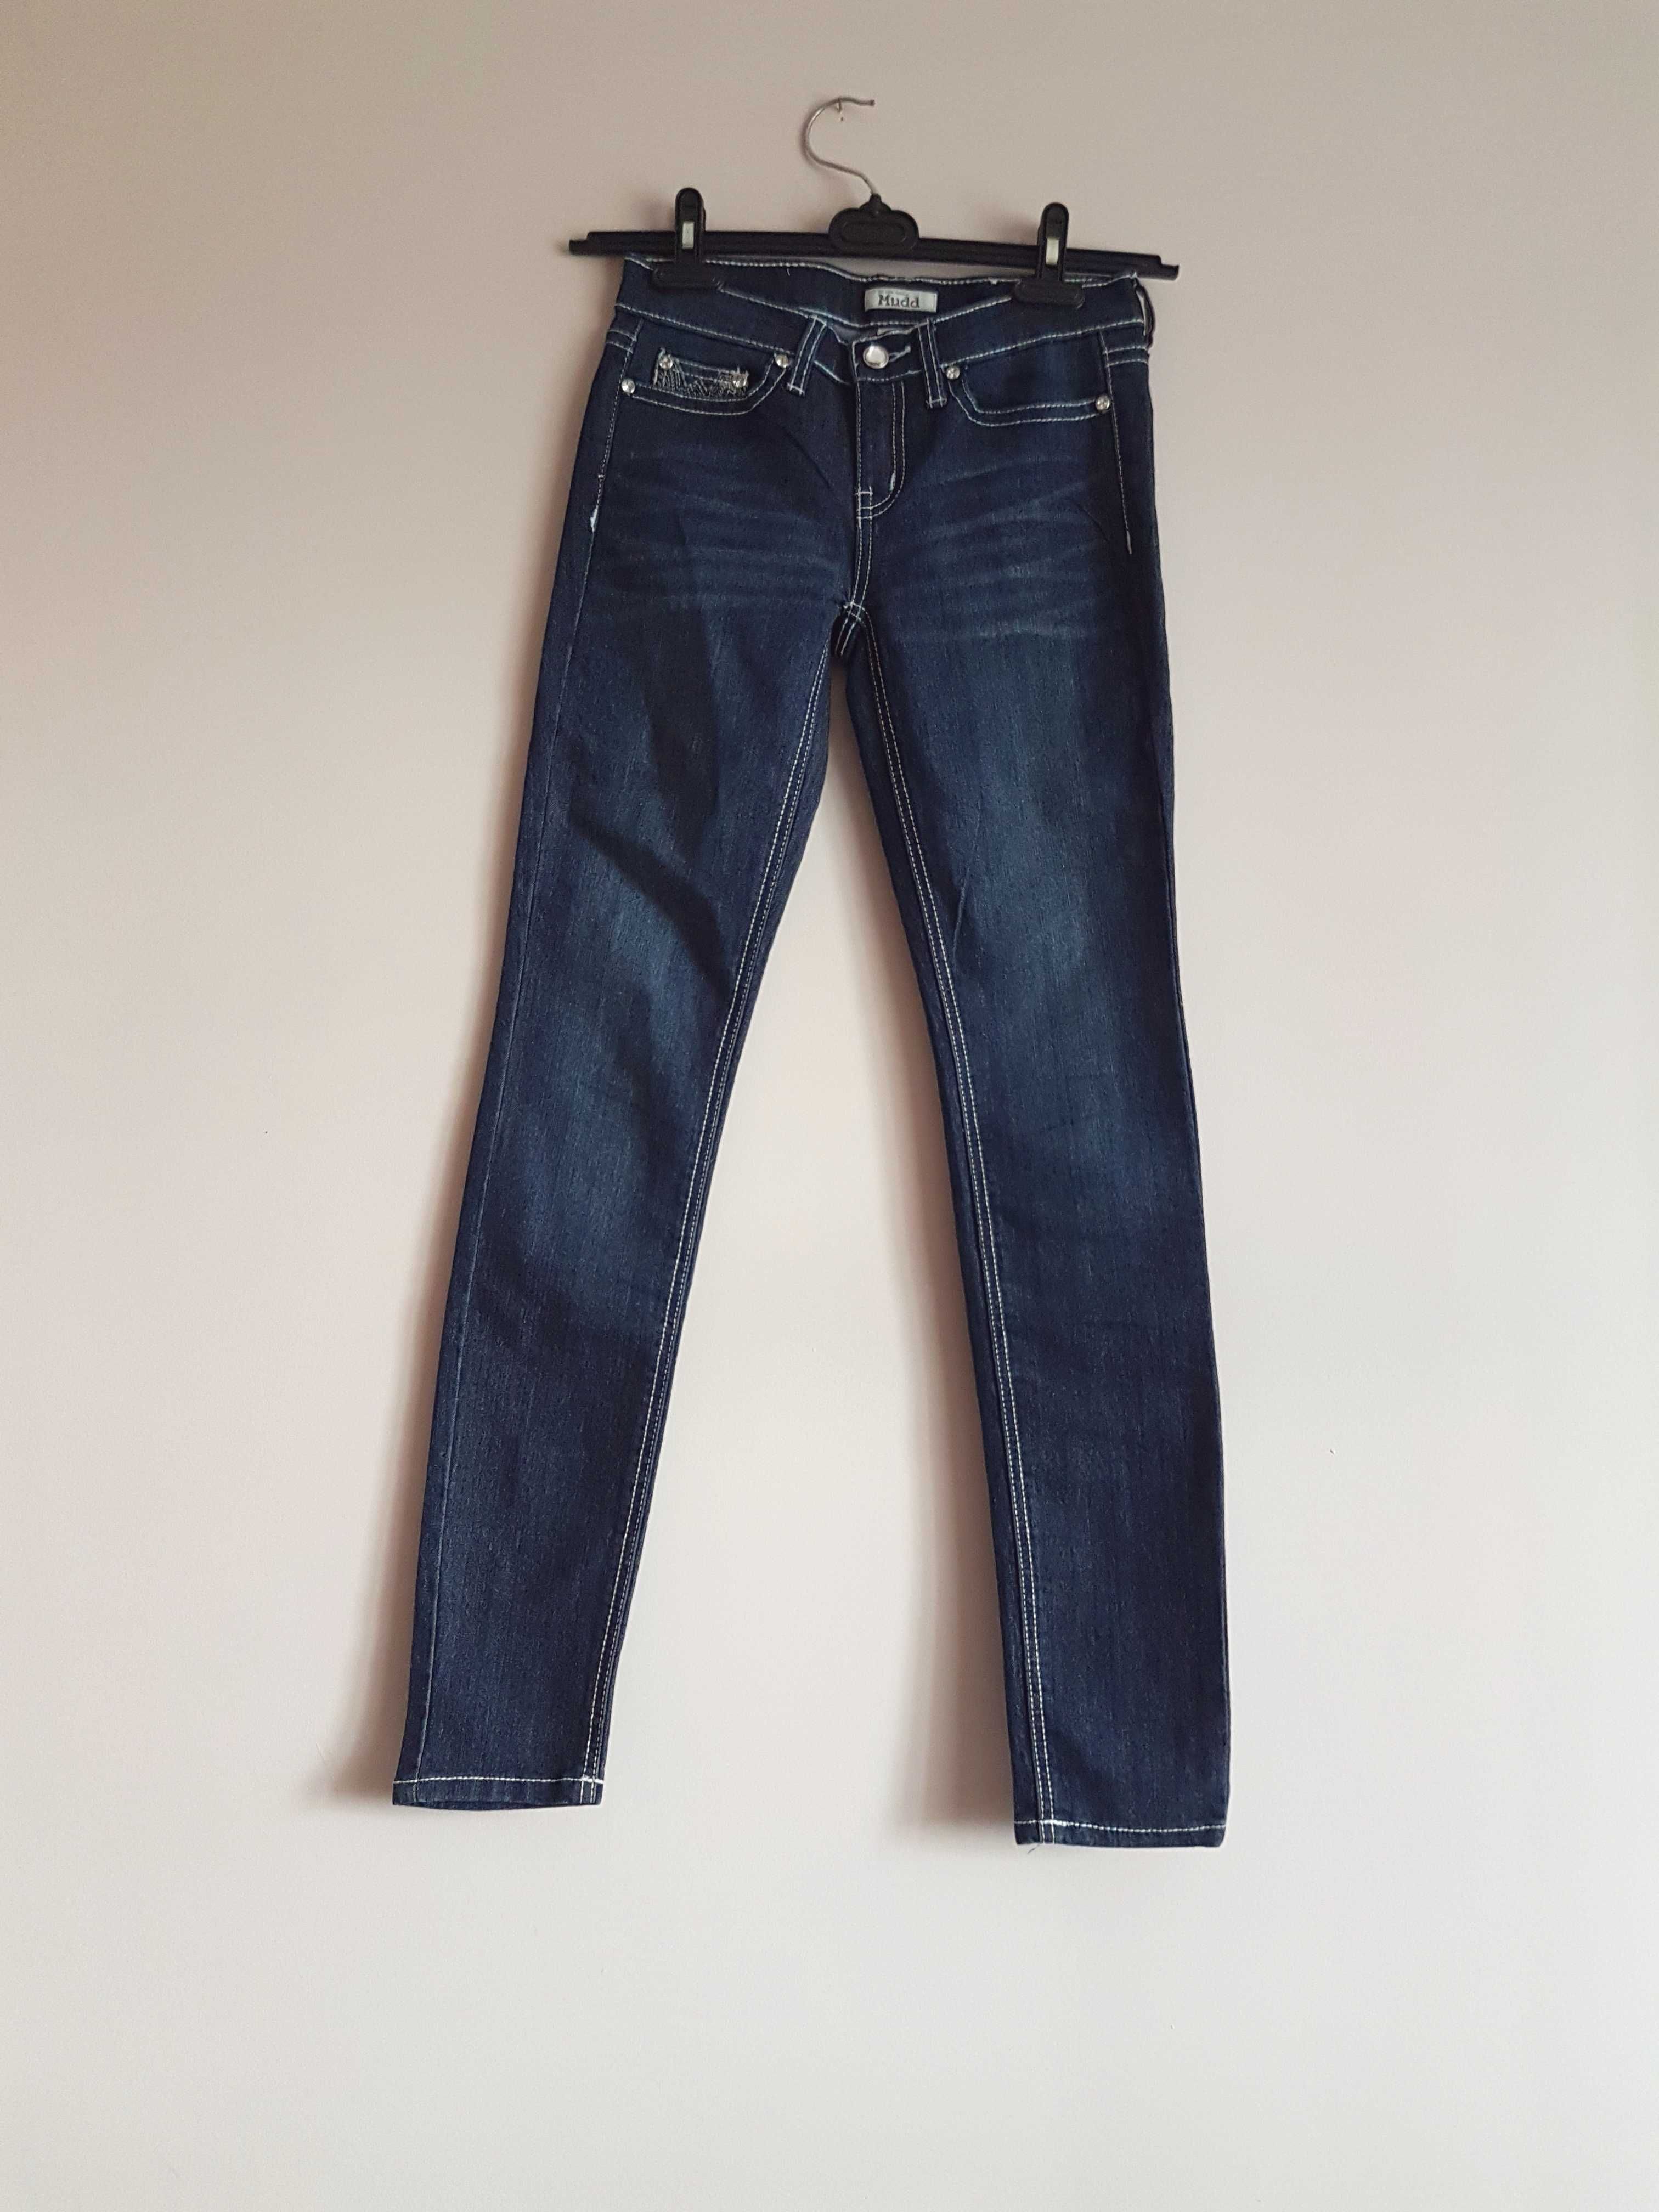 Spodnie jeans dżins z cekinami z diamencikami XS xxs dziewczynki rurki